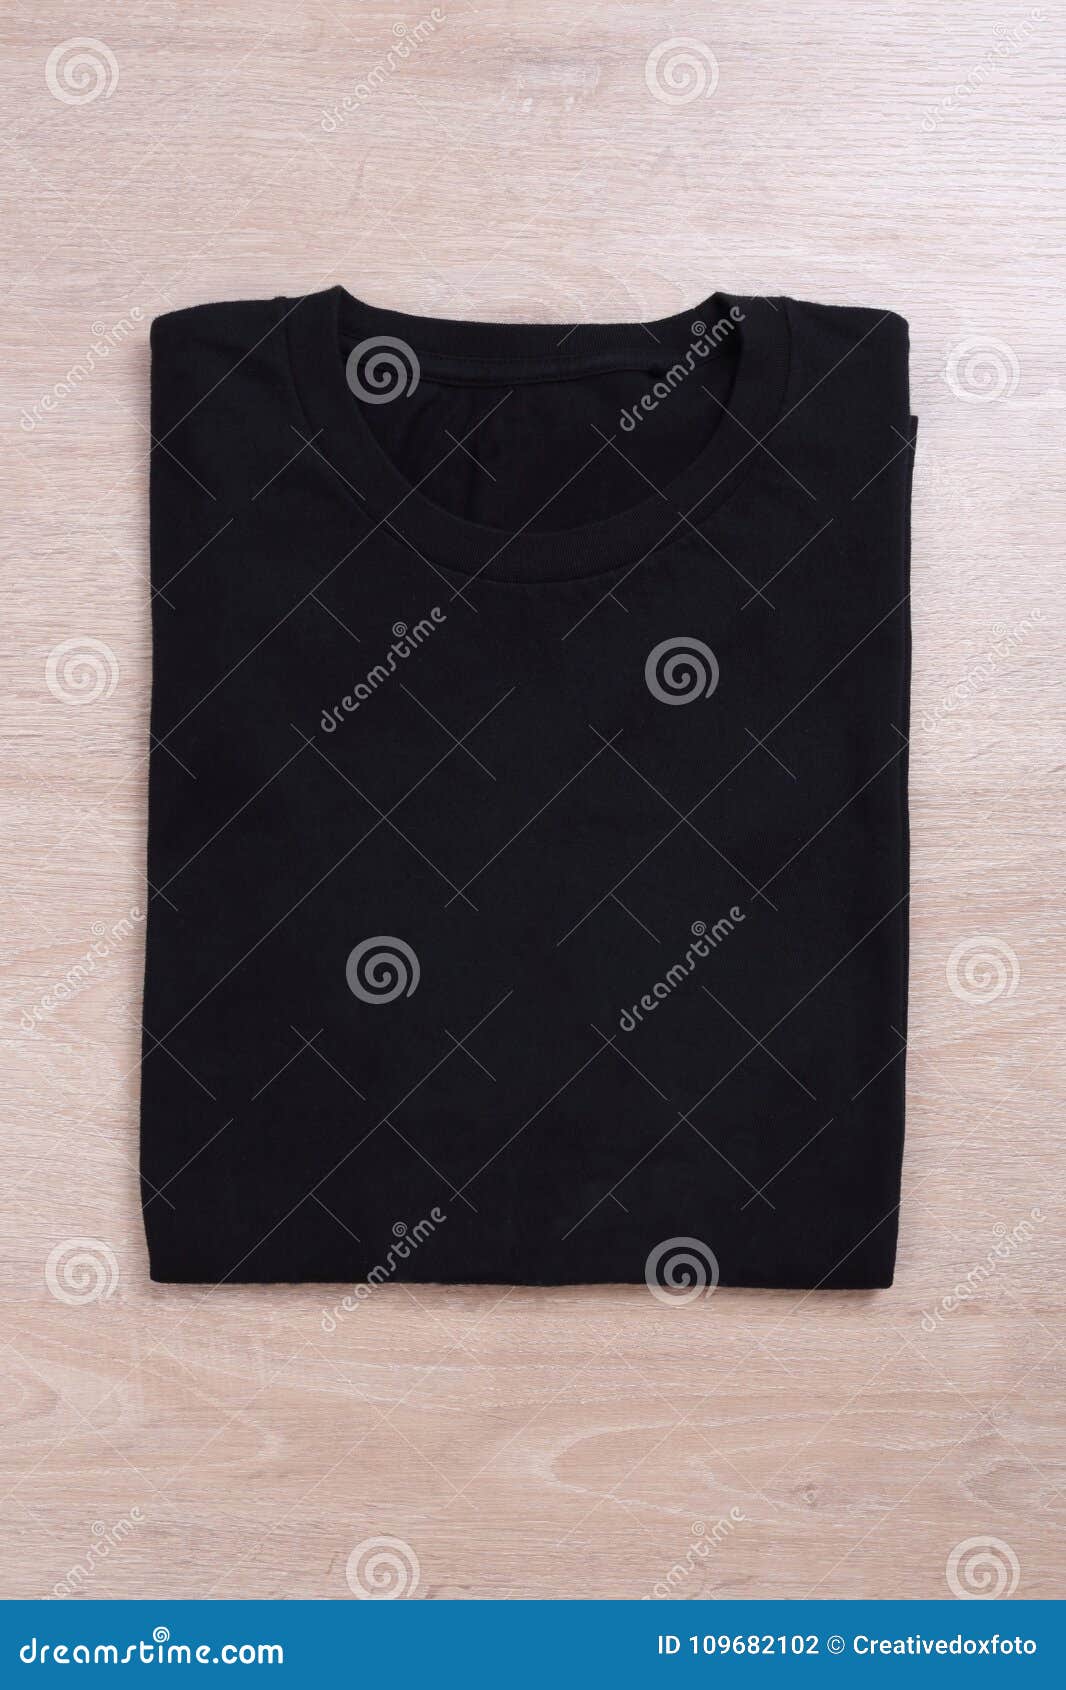 Folded Black Tshirt on Wooden Background Stock Photo - Image of wear ...